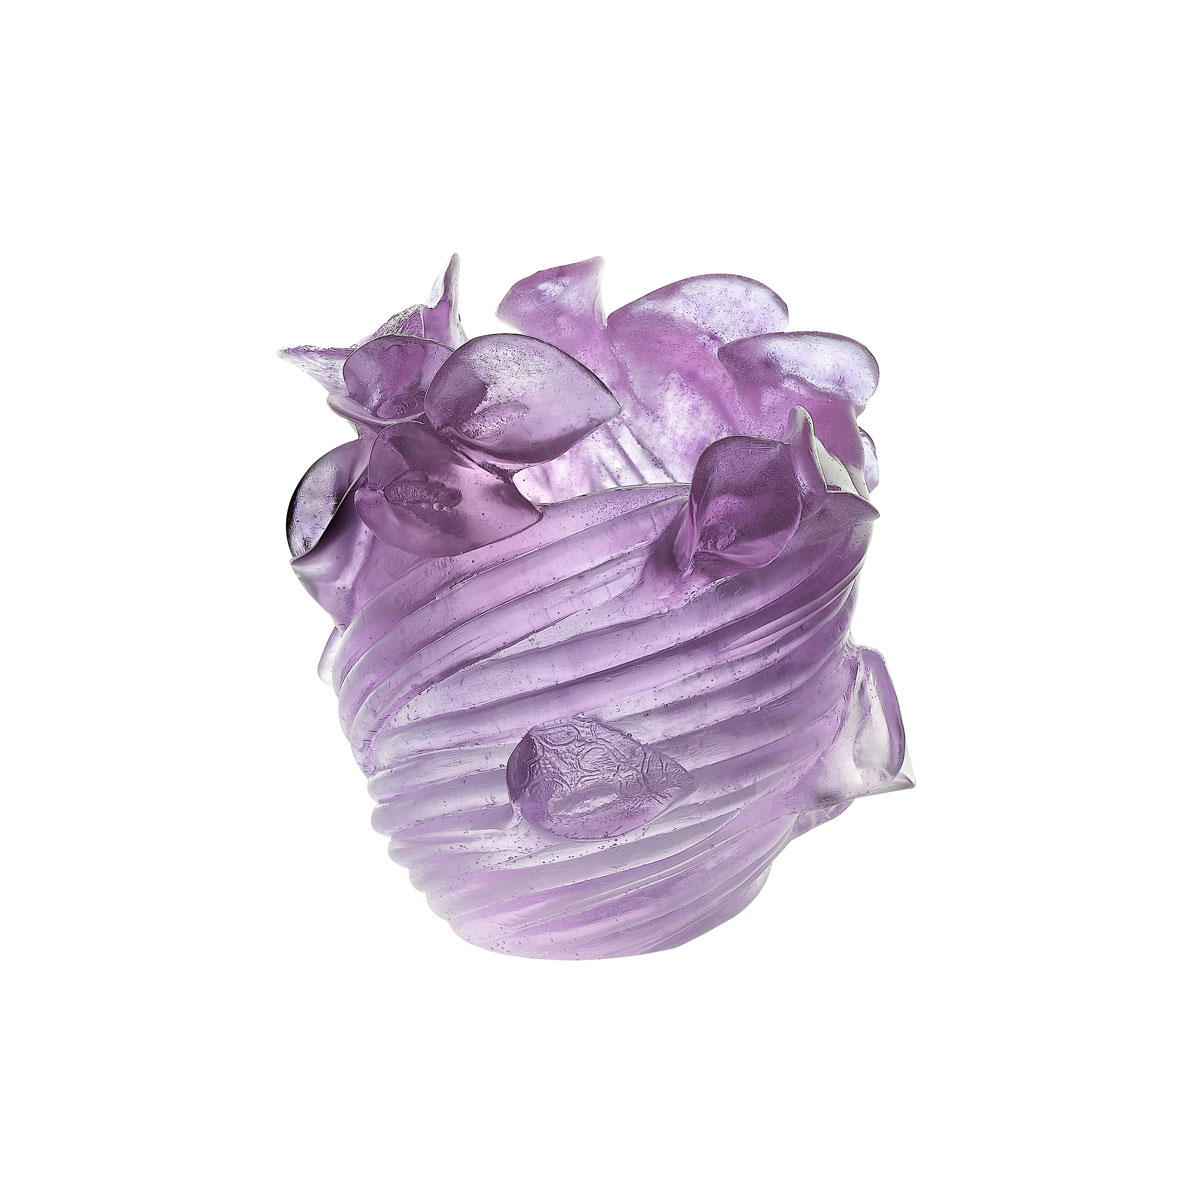 Daum Arum Small Crystal Vase in Ultraviolet